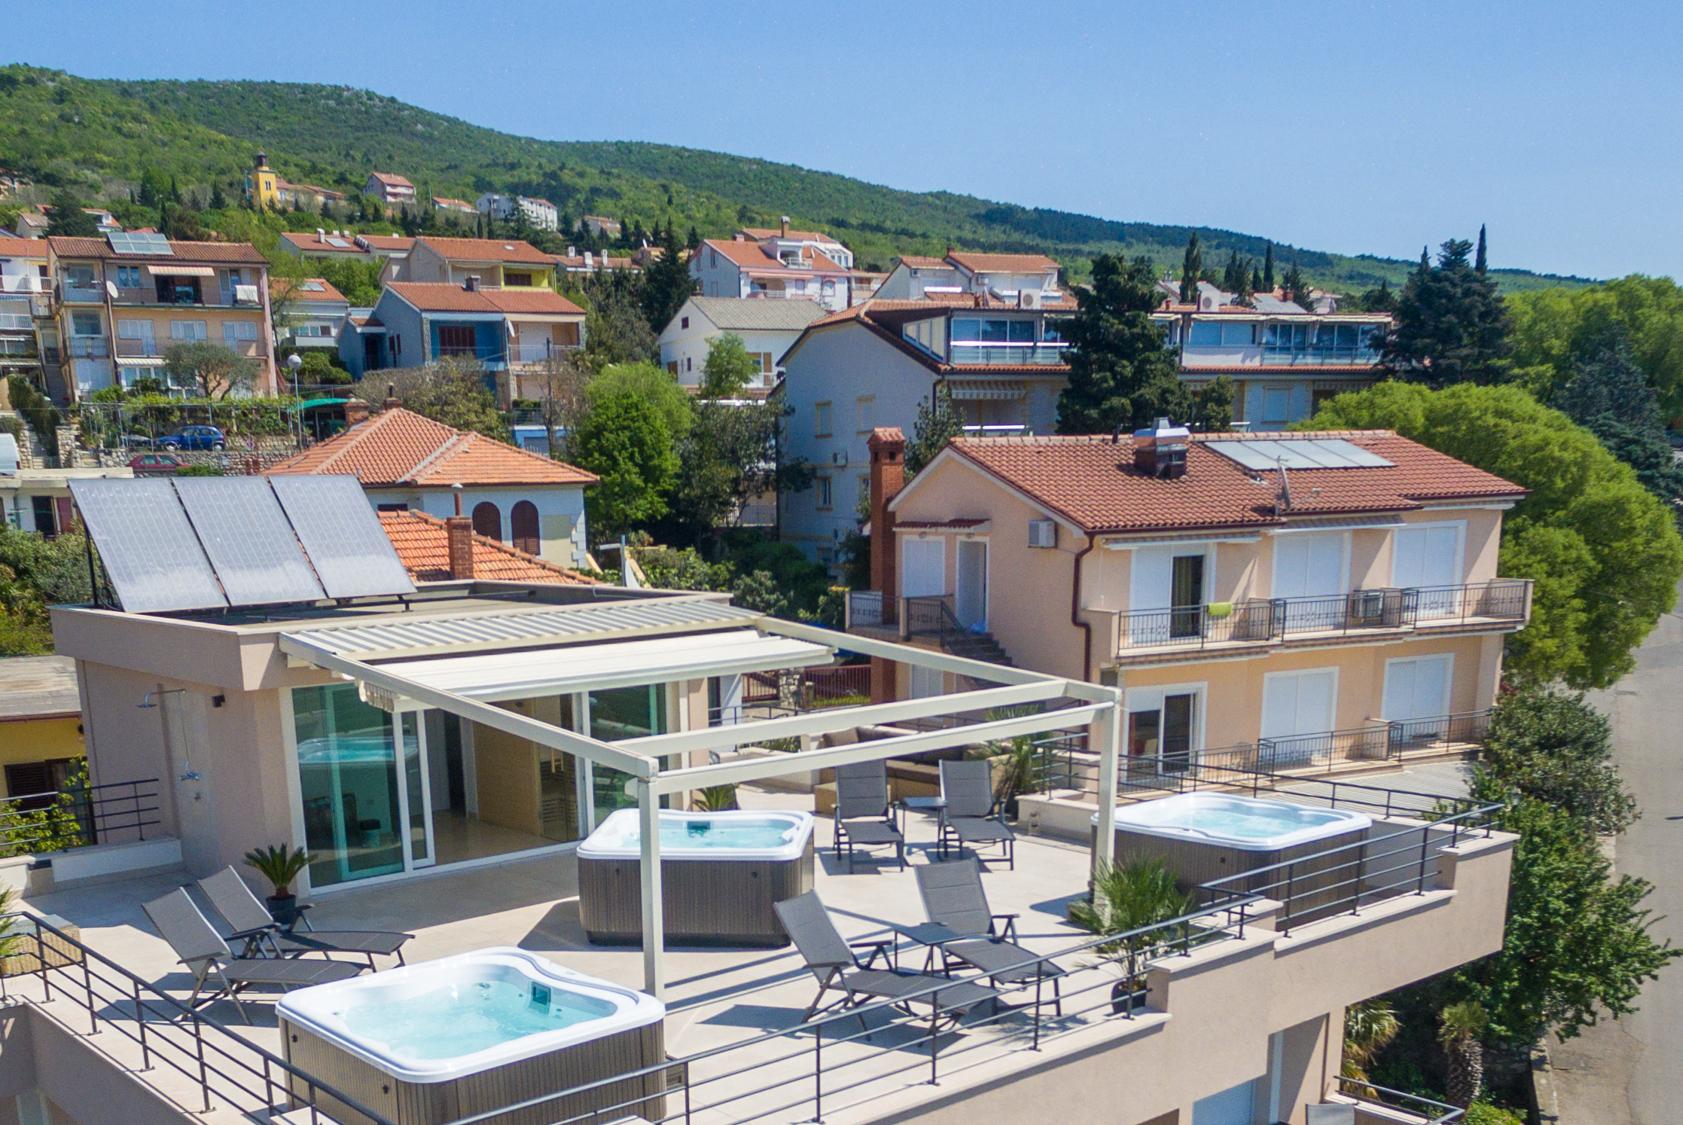 Ferienwohnung für 6 Personen ca. 55 m² i  in Kroatien